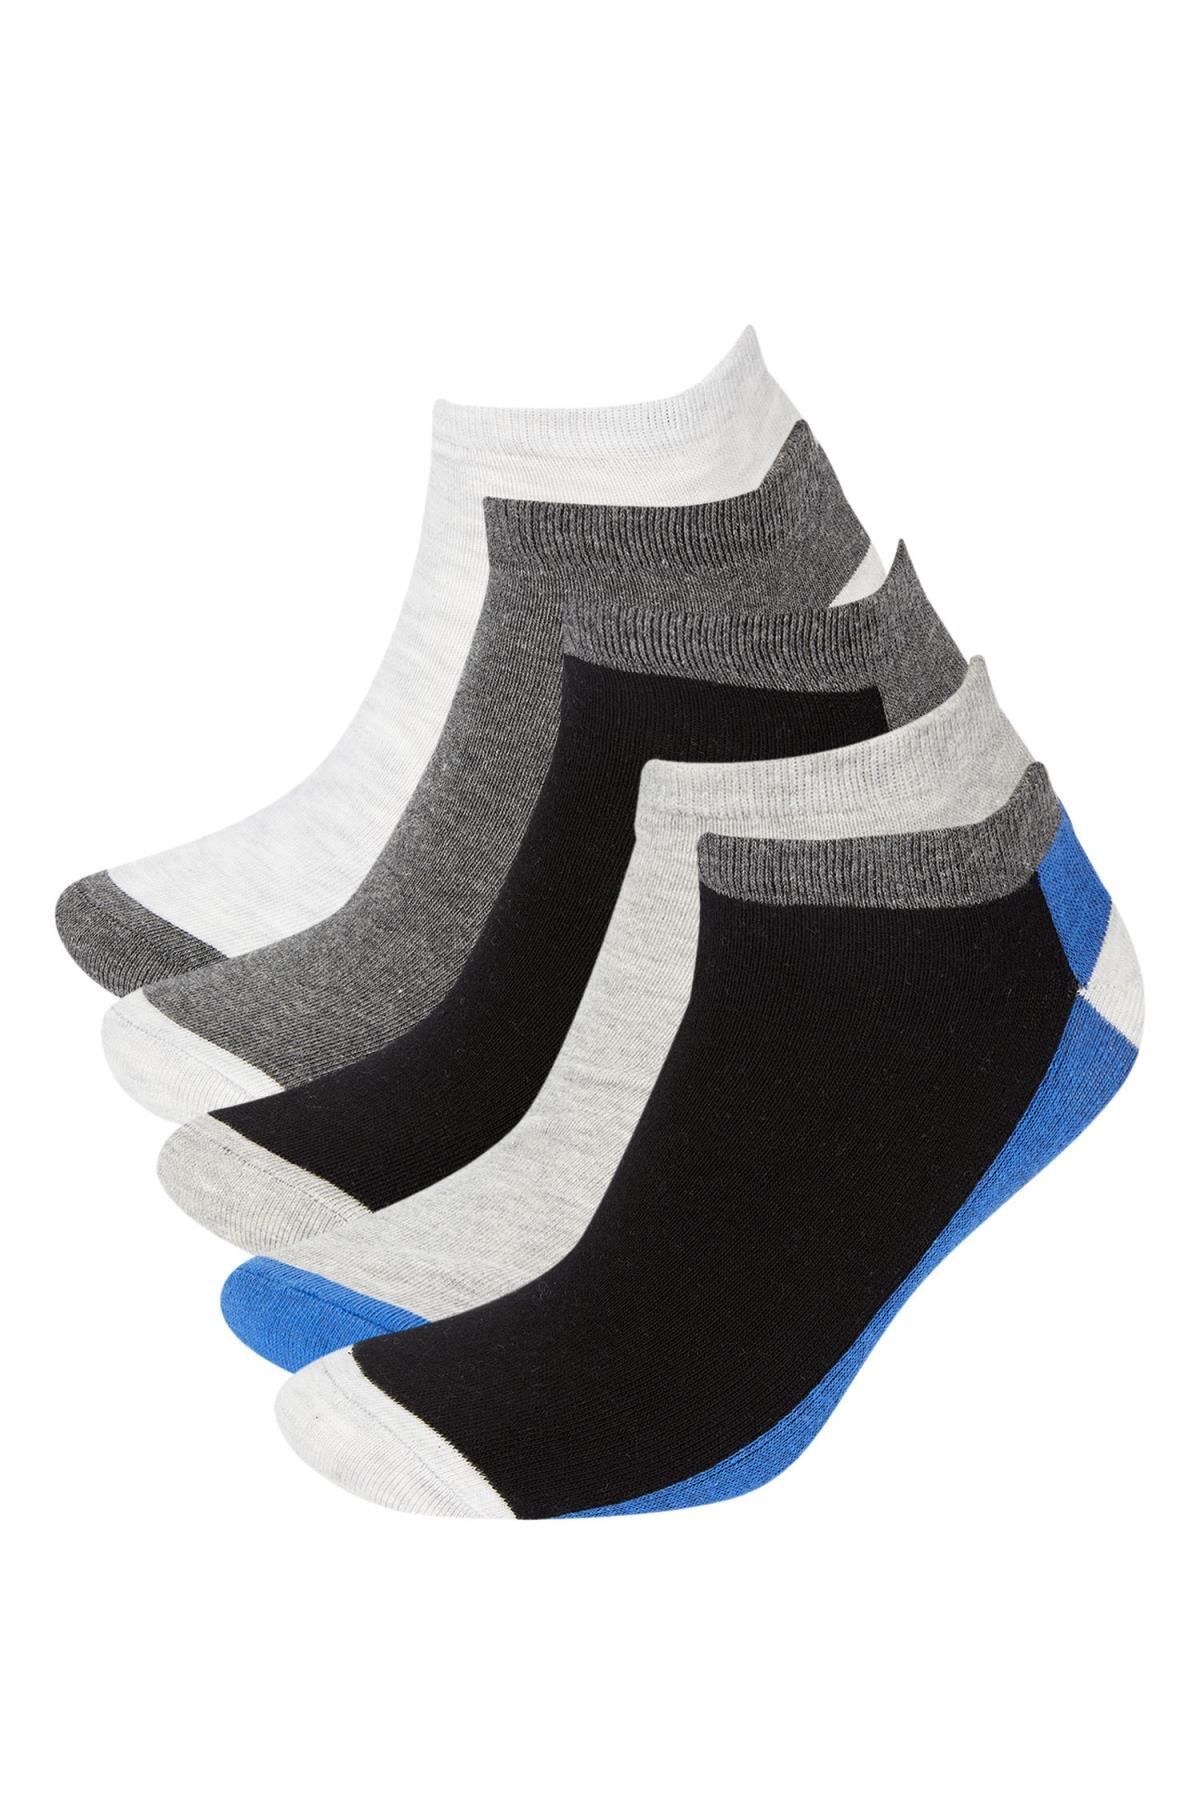 Defacto Erkek 5li Patik Çorap T7178azns